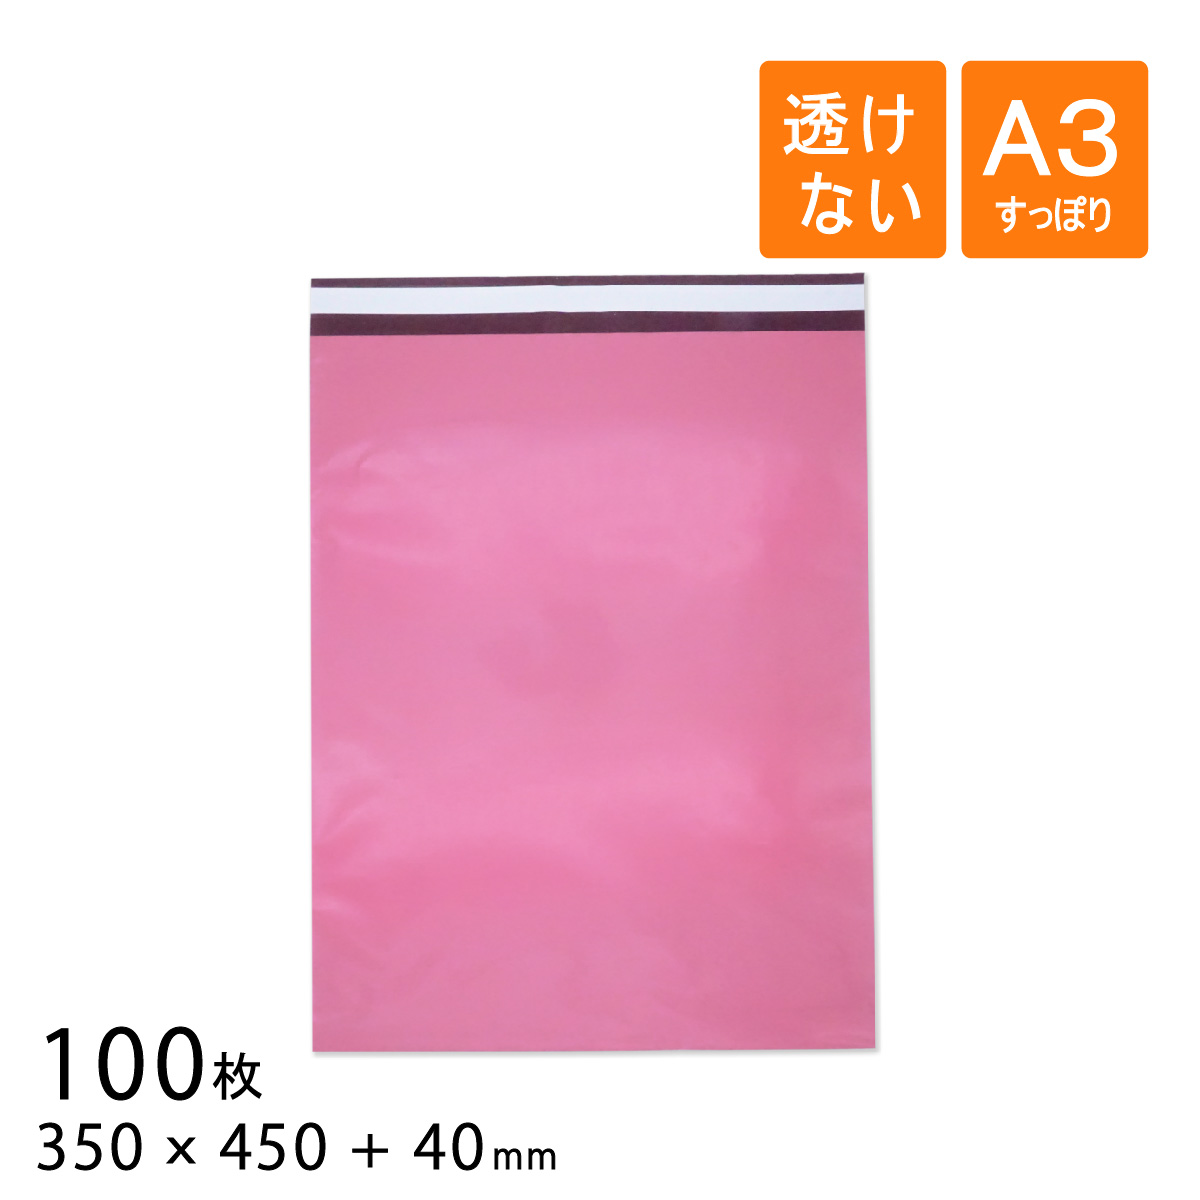 マーケット 100枚 アパレル 手数料無料 衣類 の梱包 発送に便利 宅配ビニール袋 ピンク色 幅350×高さ450 A3すっぽり 折り返し40mm 厚さ0.08mm